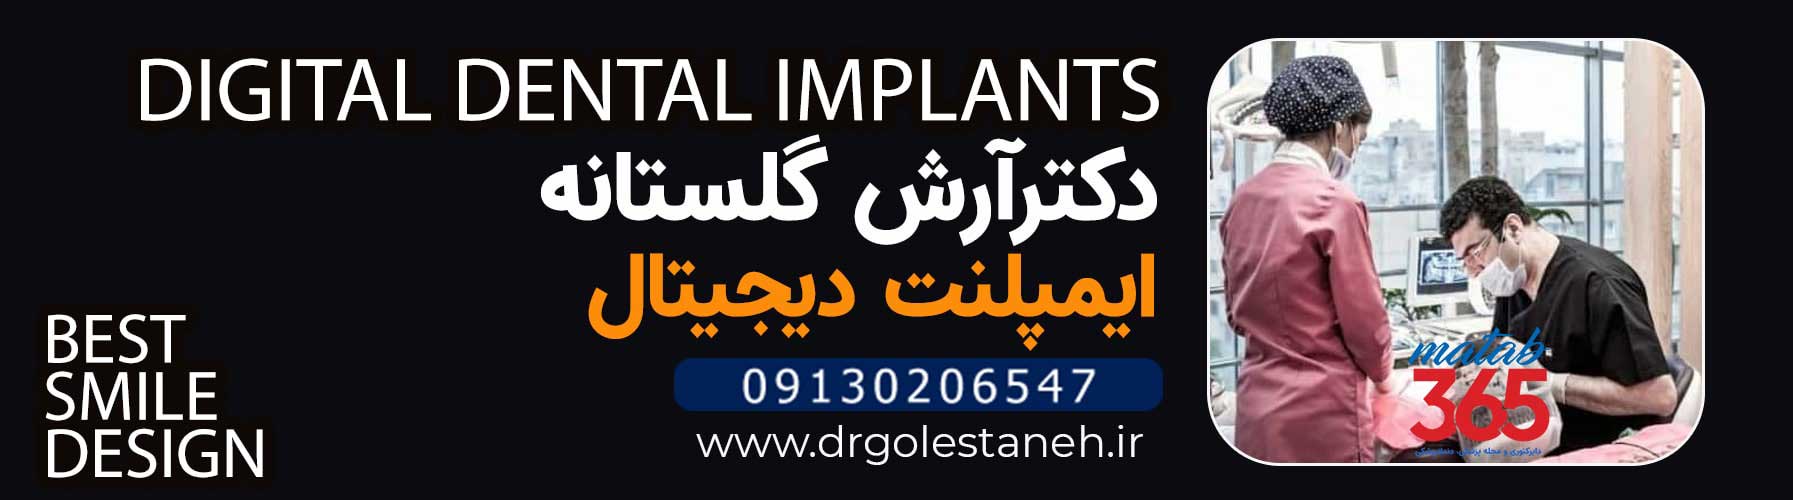 دکتر آرش گلستانه متخصص ایمپلنت در اصفهان